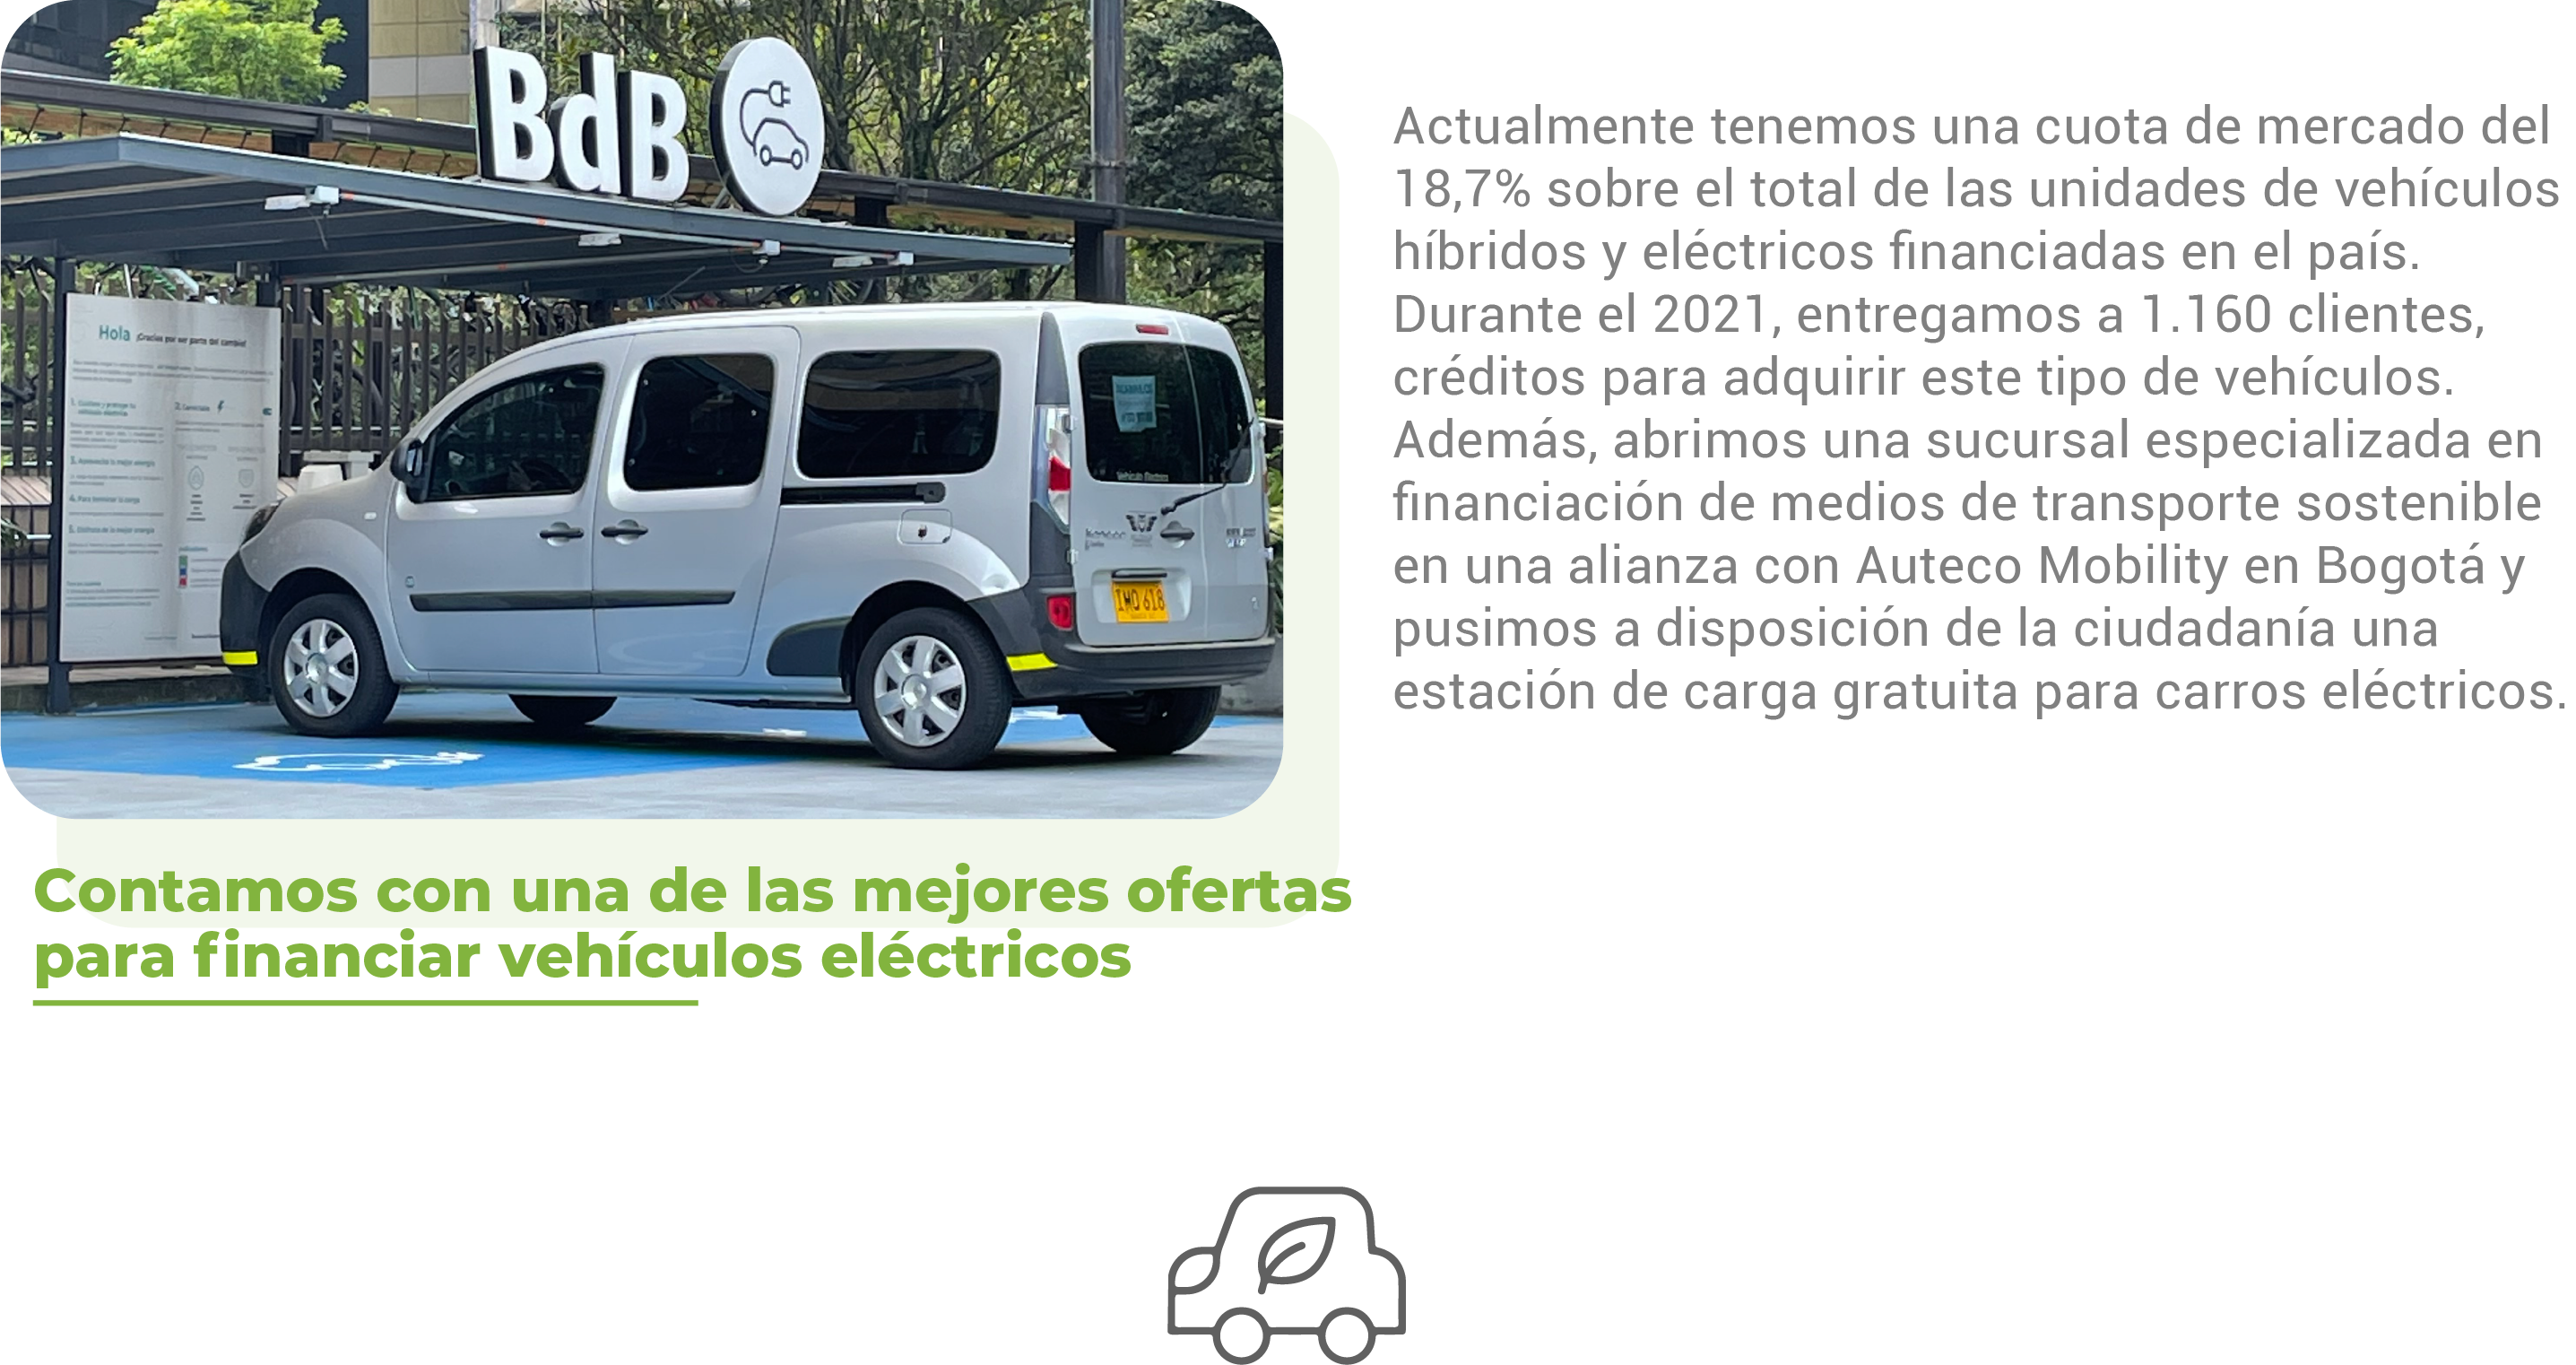 Actualmente tenemos una cuota de mercado del 18,7% sobre el total de las unidades de vehículos híbridos y eléctricos financiadas en el país. Durante el 2021, entregamos a 1.160 clientes, créditos para adquirir este tipo de vehículos. Además, abrimos una sucursal especializada en financiación de medios de transporte sostenible en una alianza con Auteco Mobility en Bogotá y pusimos a disposición de la ciudadanía una estación de carga gratuita para carros eléctricos.